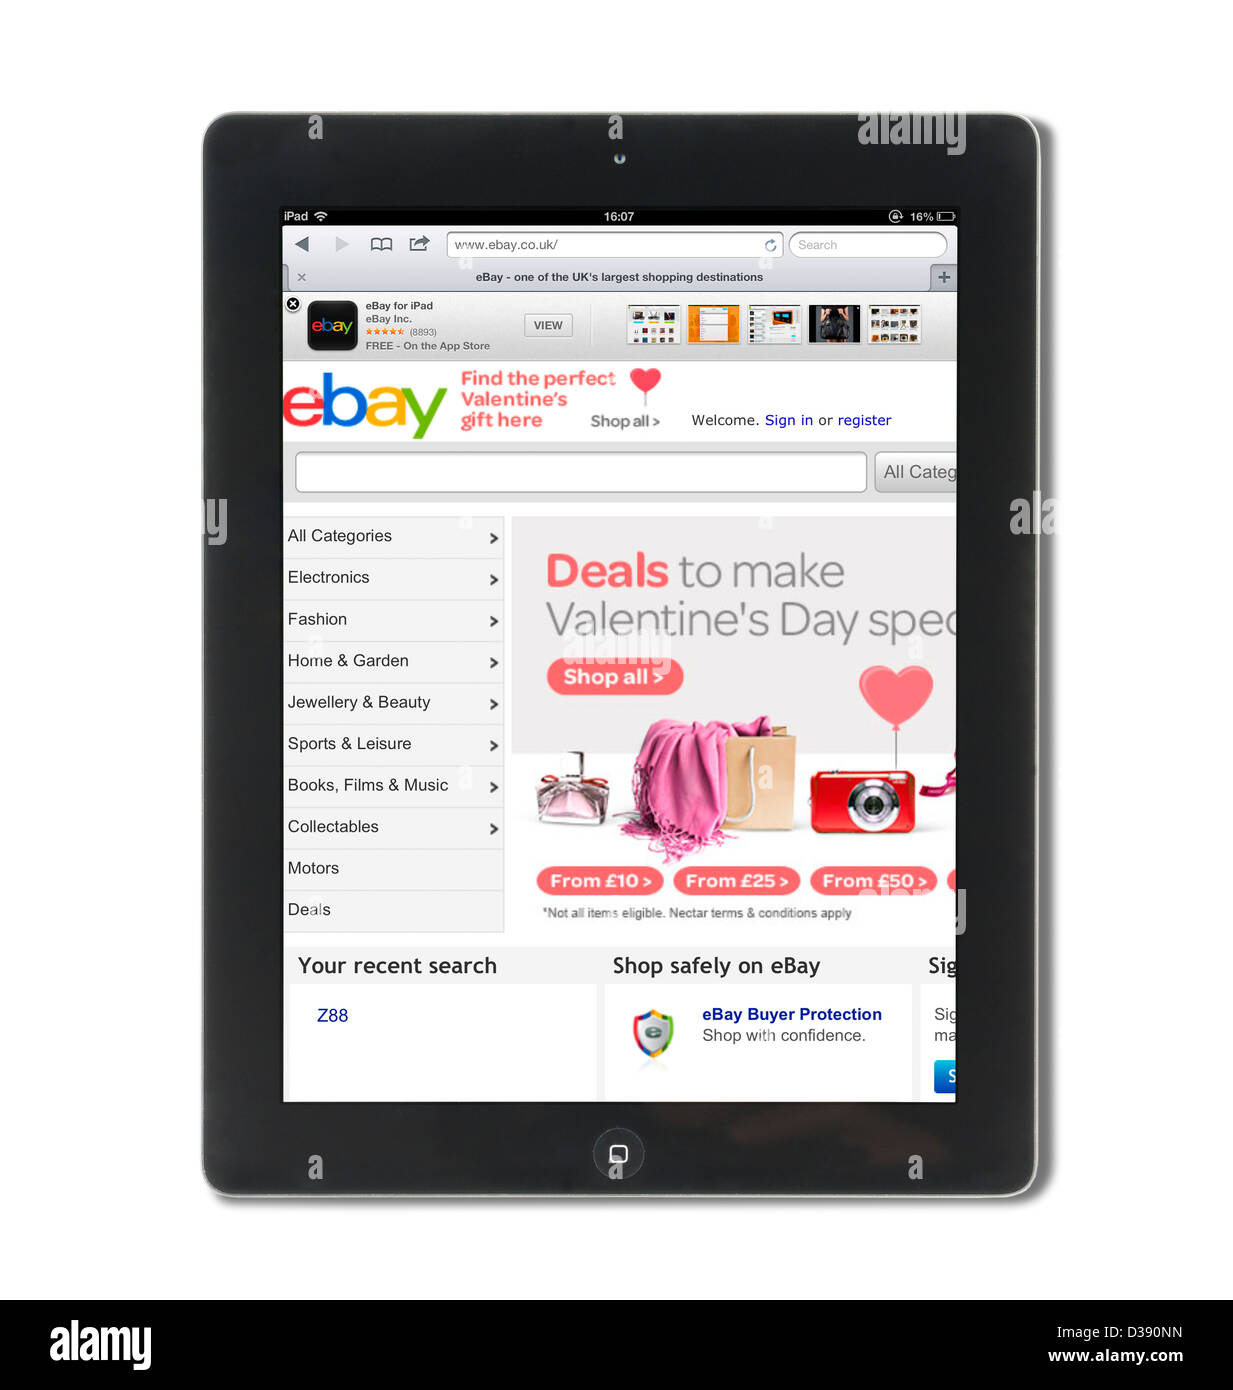 La navigation sur ebay.co.uk site sur une 4ème génération d'Apple iPad tablet computer Banque D'Images